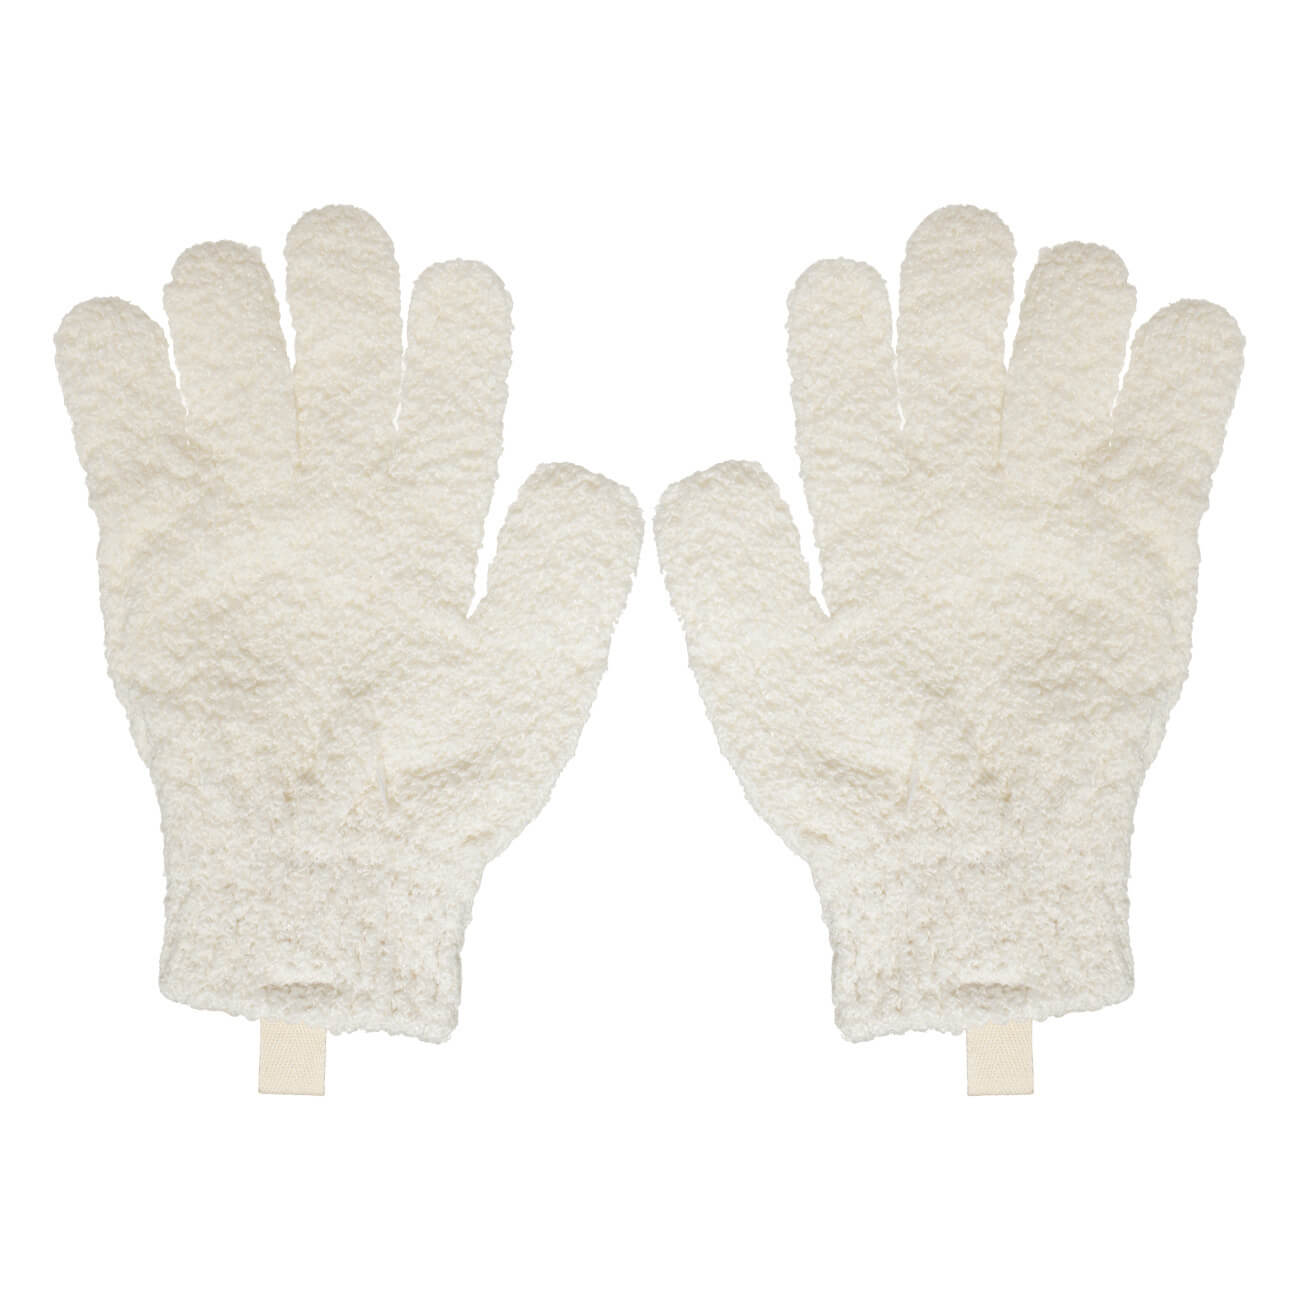 Перчатка для мытья тела, 21 см, 2 шт, отшелушивающая, полиэстер, молочная, Unique spa перчатка для мытья тела 21 см 2 шт отшелушивающая полиэстер молочная unique spa